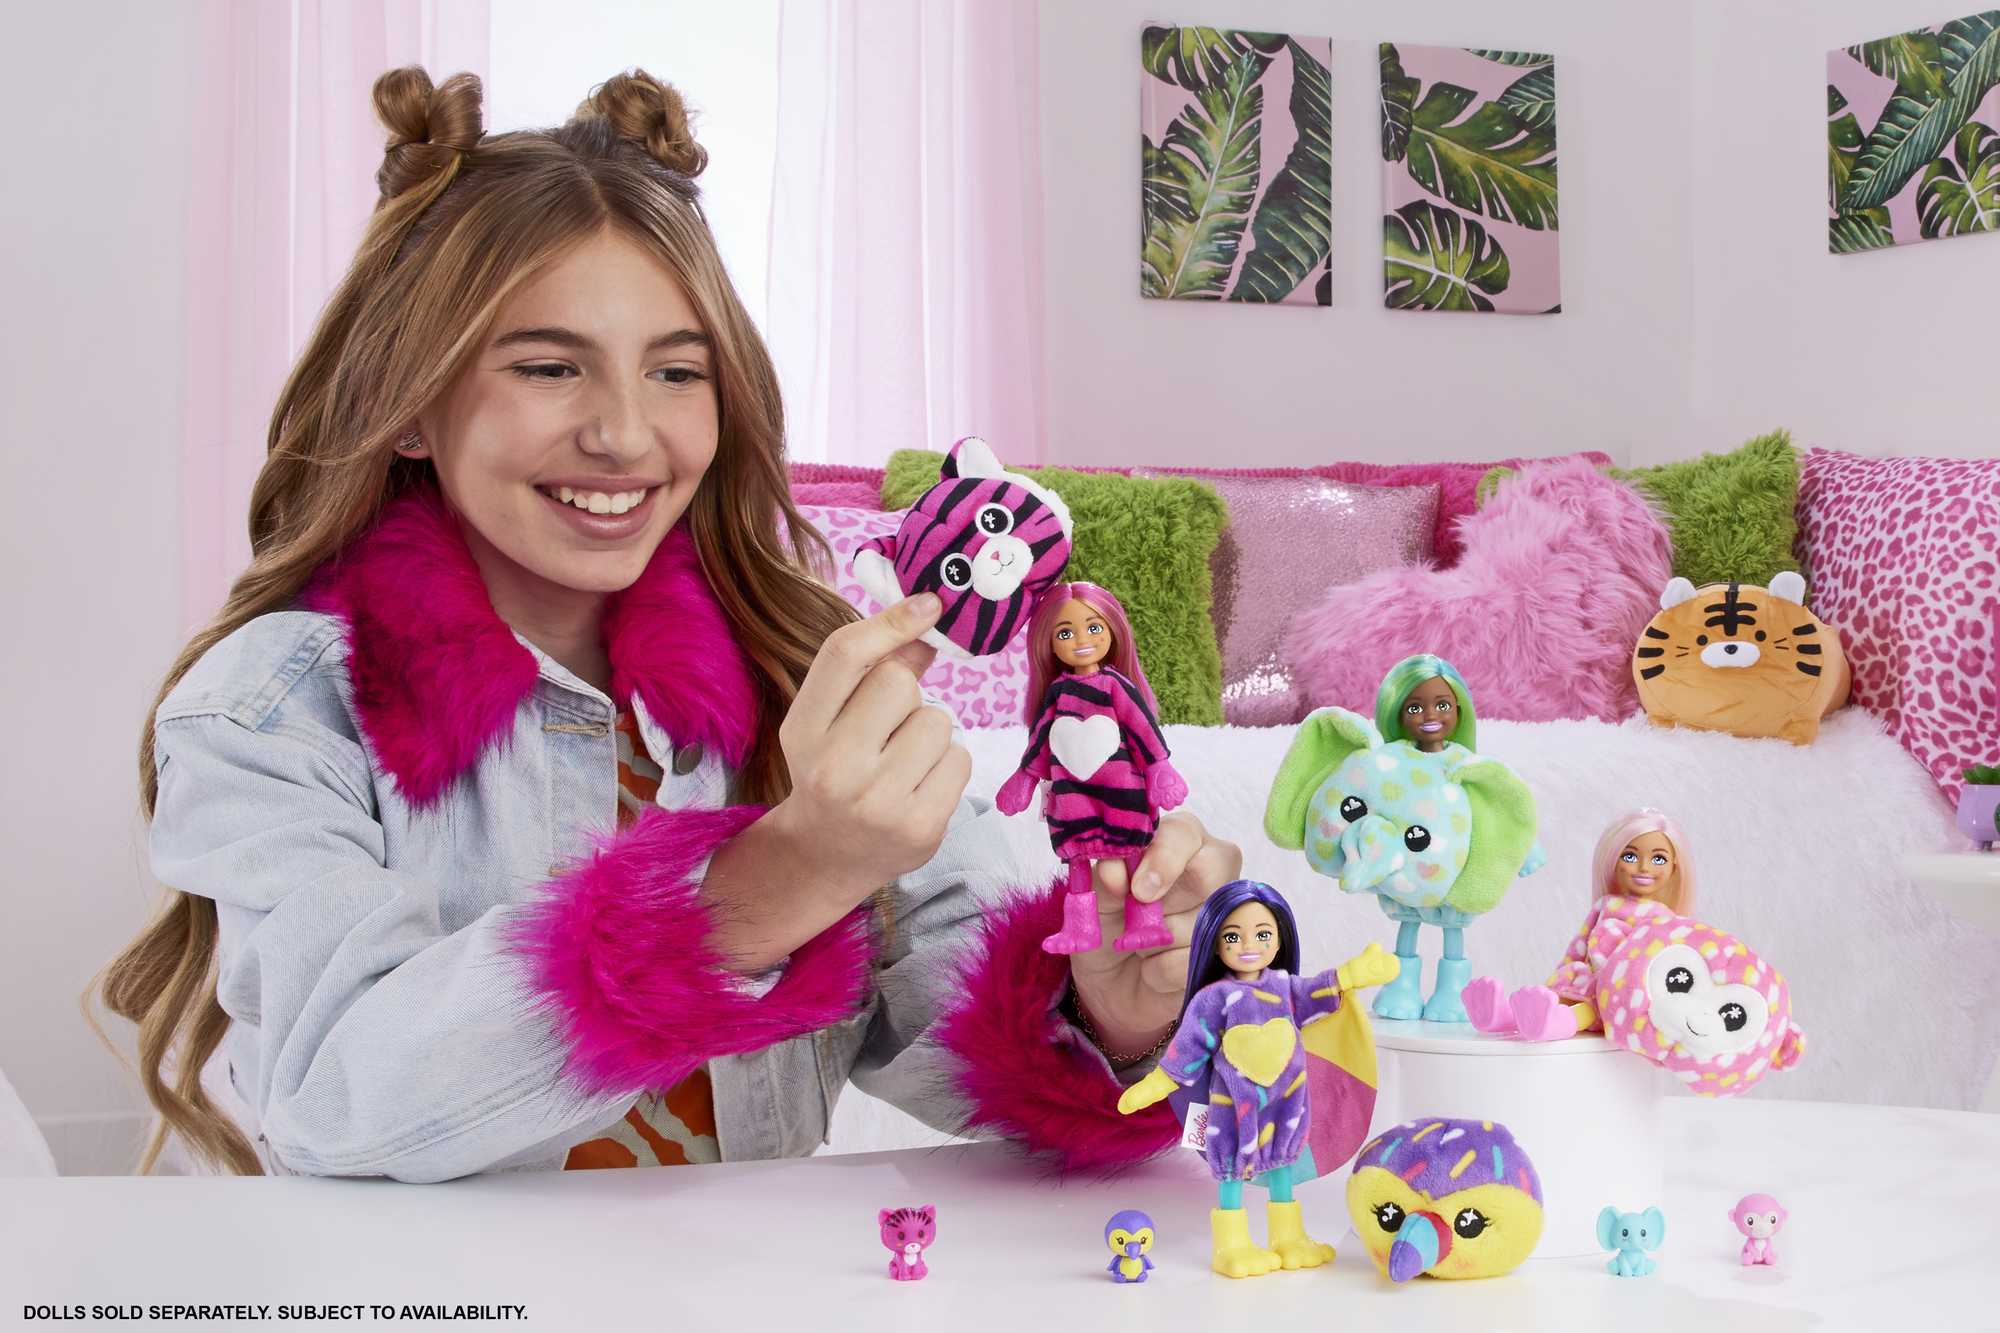 Barbie Cutie Reveal Jungle Series Doll